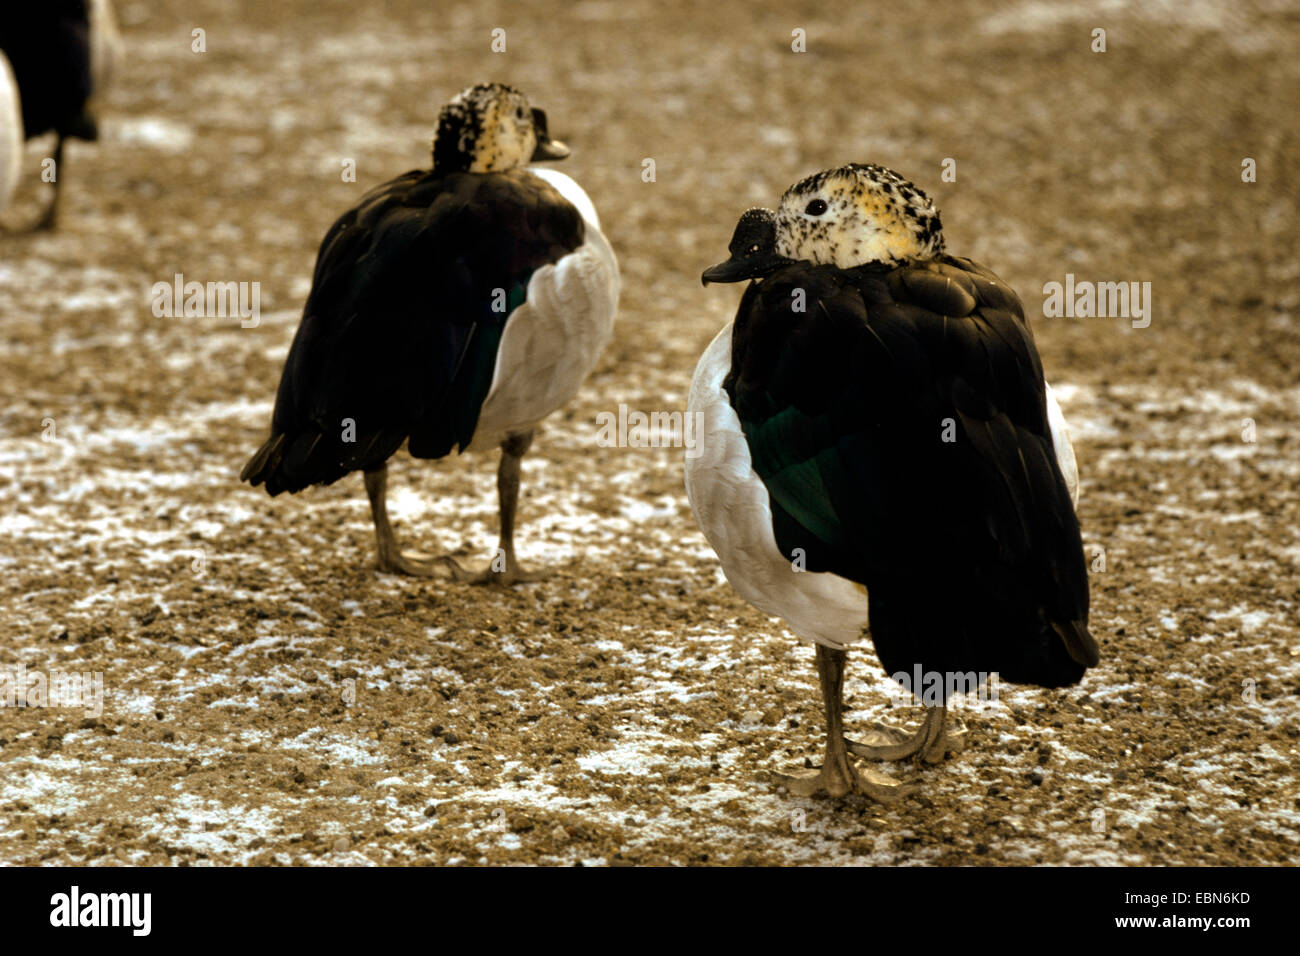 Pettine duck, manopola-fatturati anatra (Sarkidiornis melanotos, Sarkidiornis melanotus), due anatre pettine permanente sulla sabbia Foto Stock